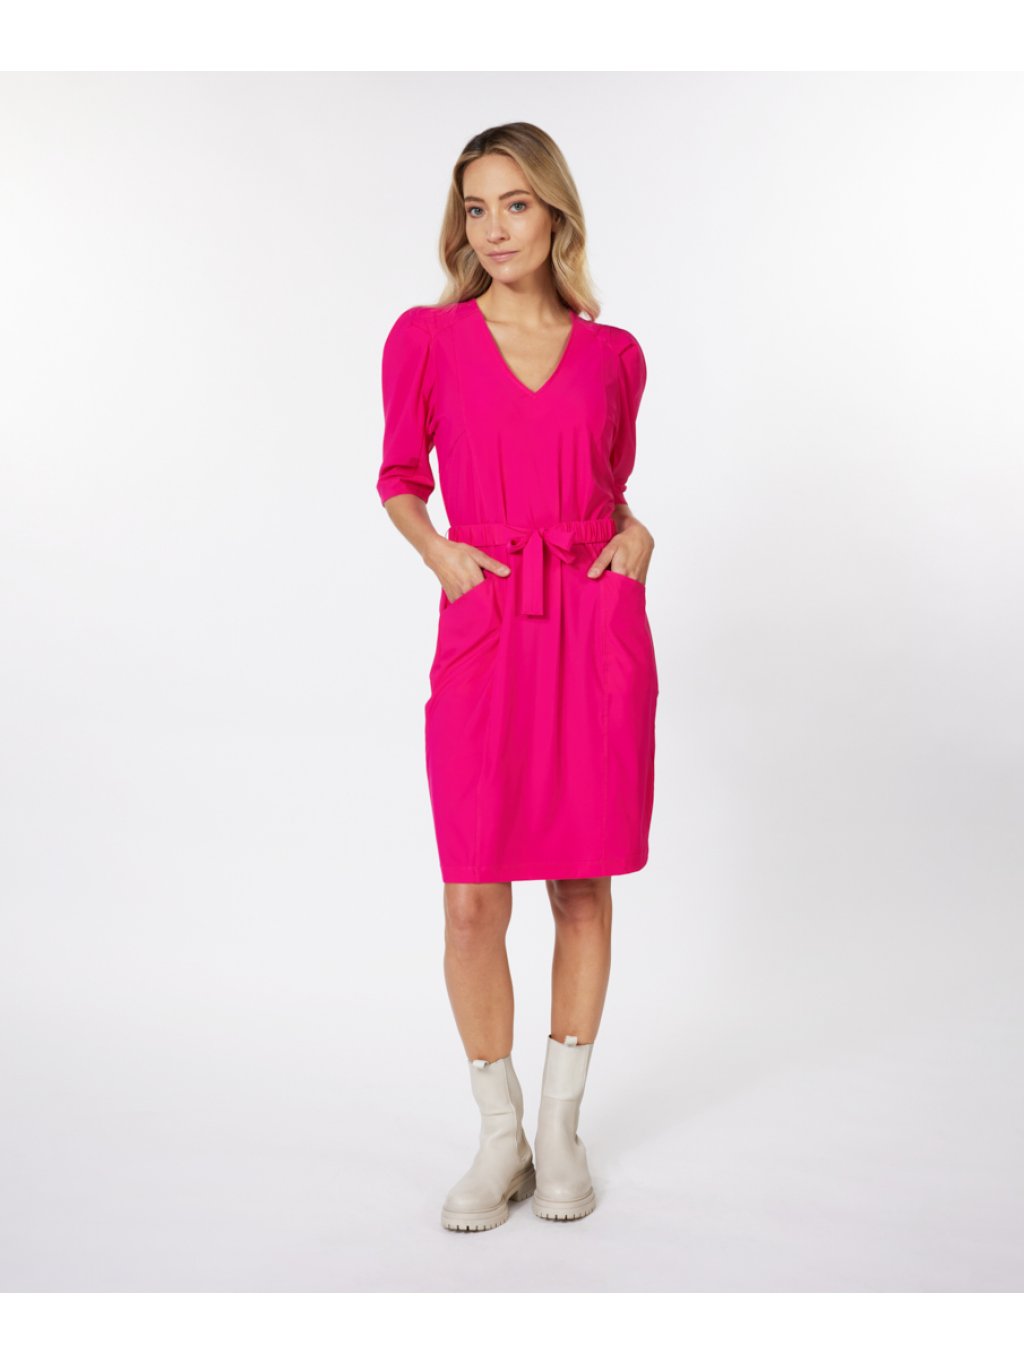 Šaty Esqualo 5017 růžové pink s puff rukávem